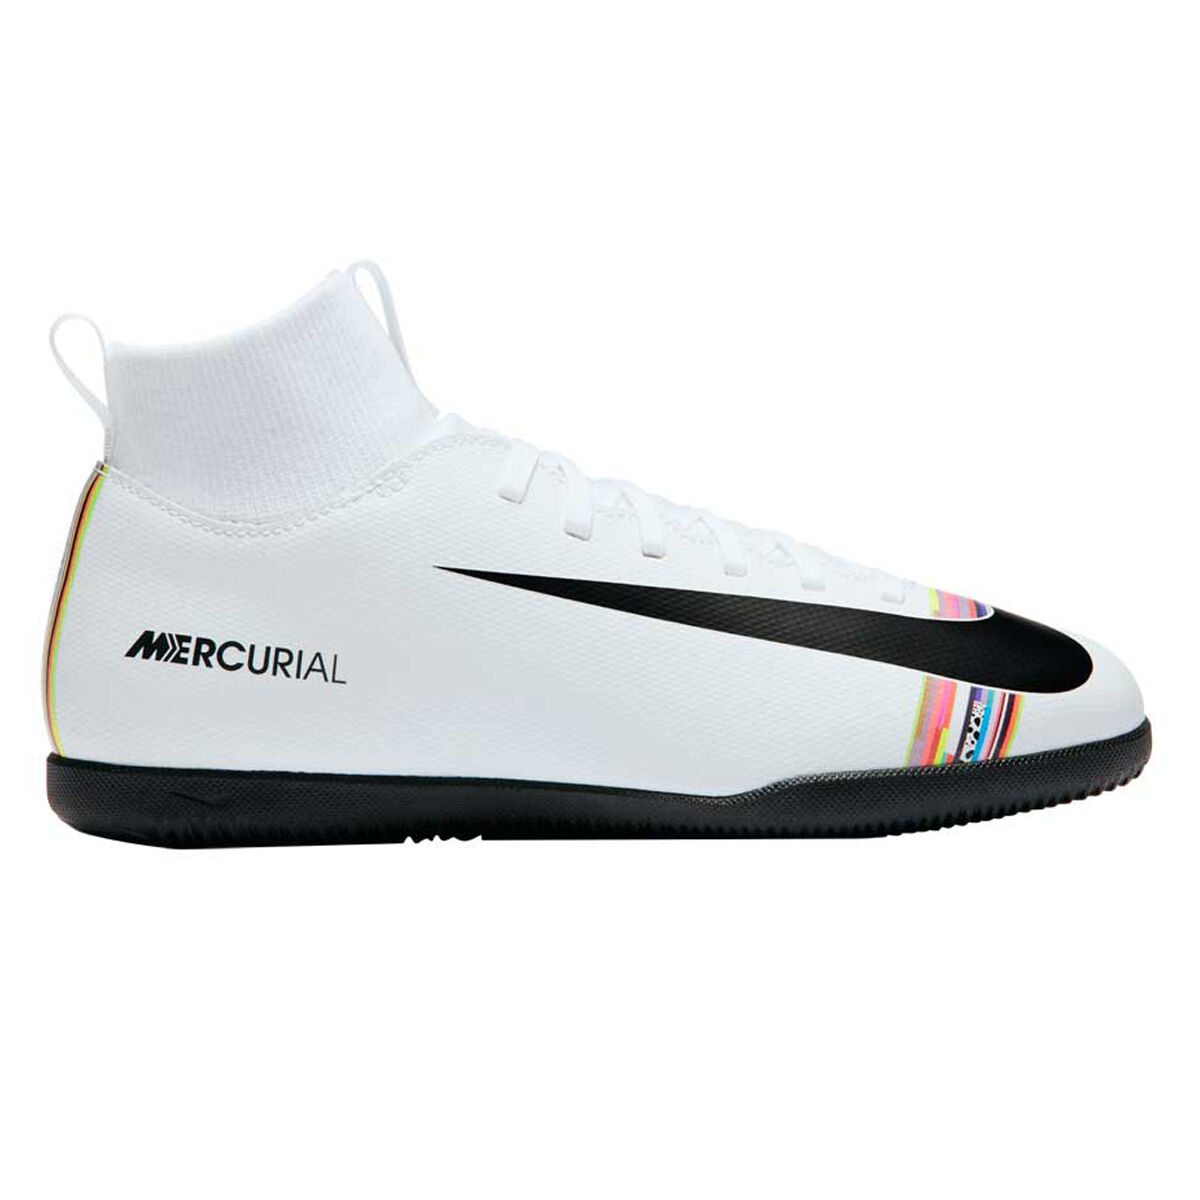 white nike futsal shoes